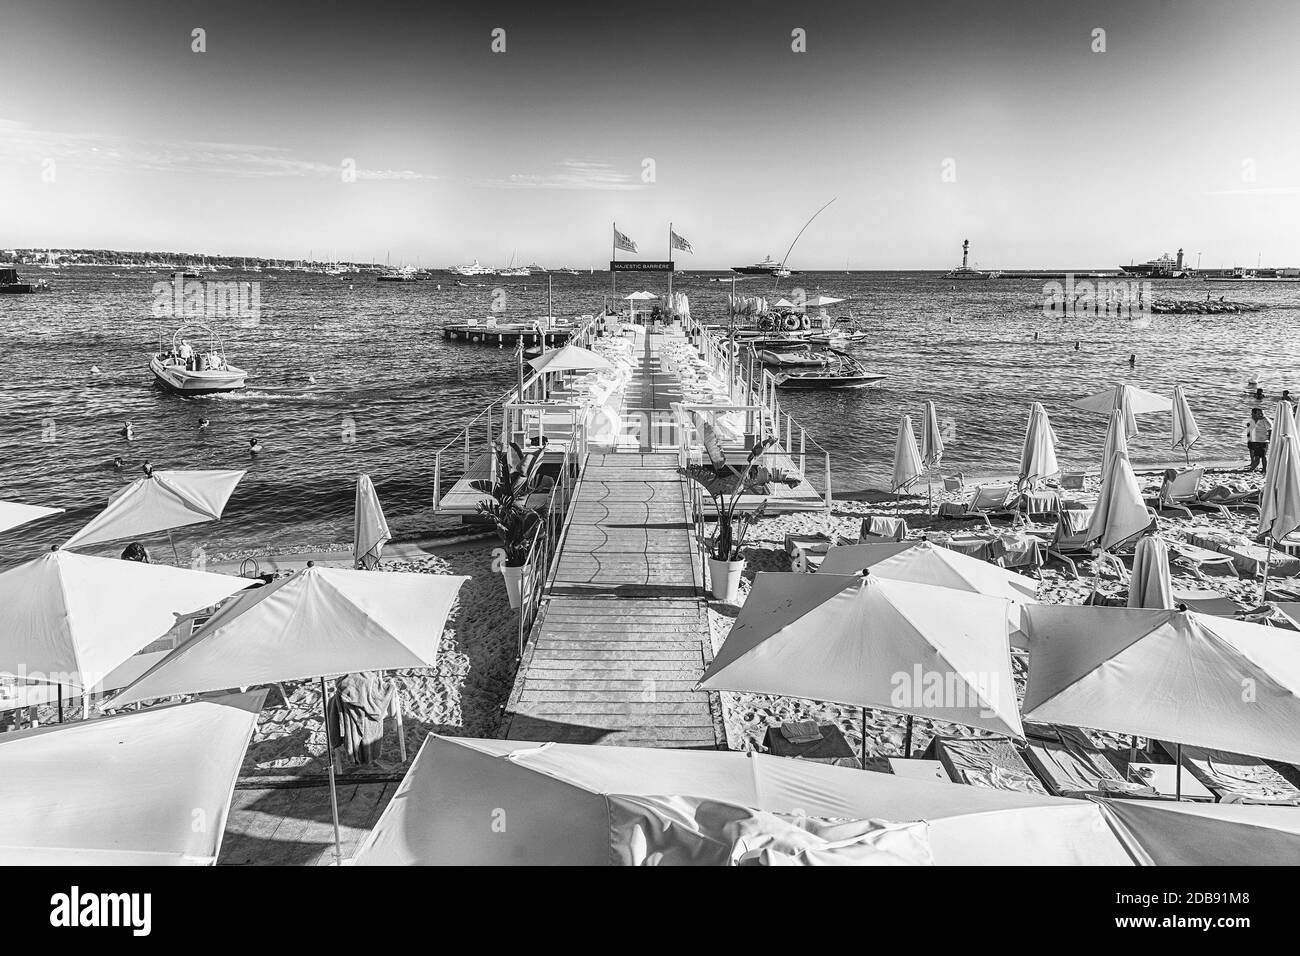 CANNES, FRANCIA - AGOSTO 15: Messa a punto dei tavoli e delle sbarre sulla spiaggia del Majestic Barrière hotel a Cannes, Costa Azzurra, Francia, come visto su A. Foto Stock